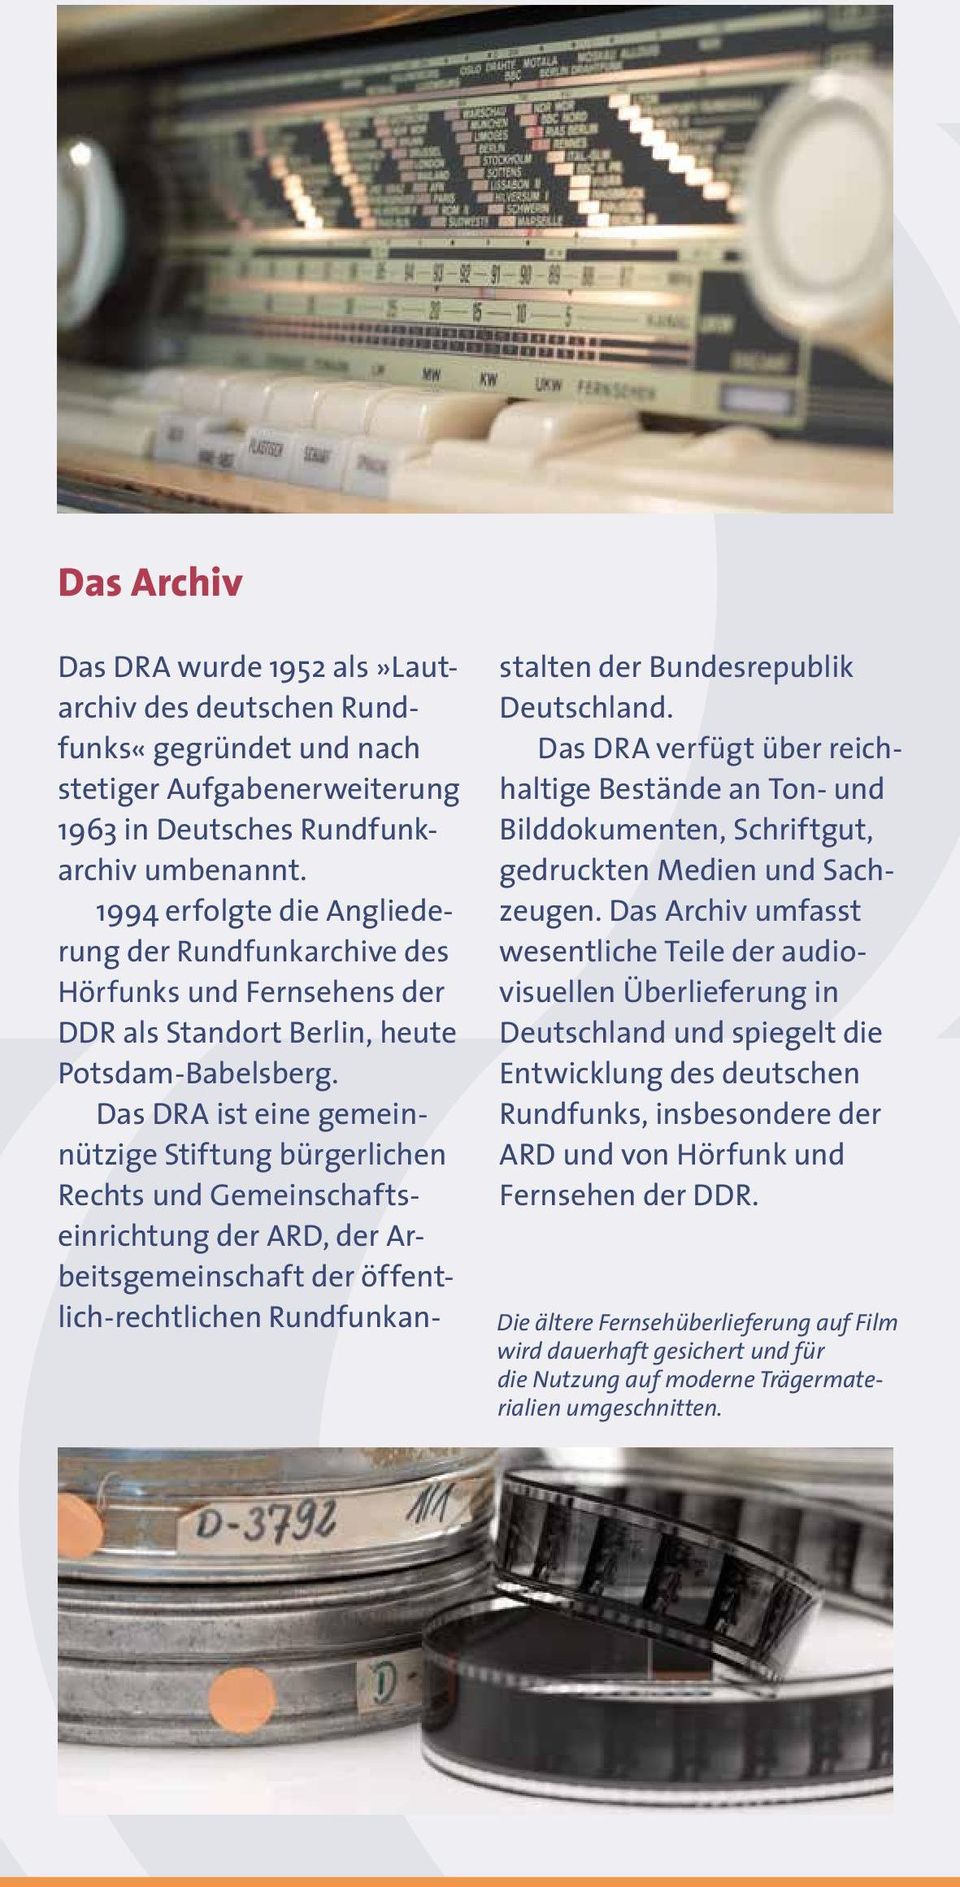 Das DRA ist eine ge meinnützige Stiftung bürgerlichen Rechts und Gemeinschaftseinrichtung der ARD, der Arbeits gemeinschaft der öffentlich-rechtlichen Rundfunkanstalten der Bundesrepublik Deutschland.